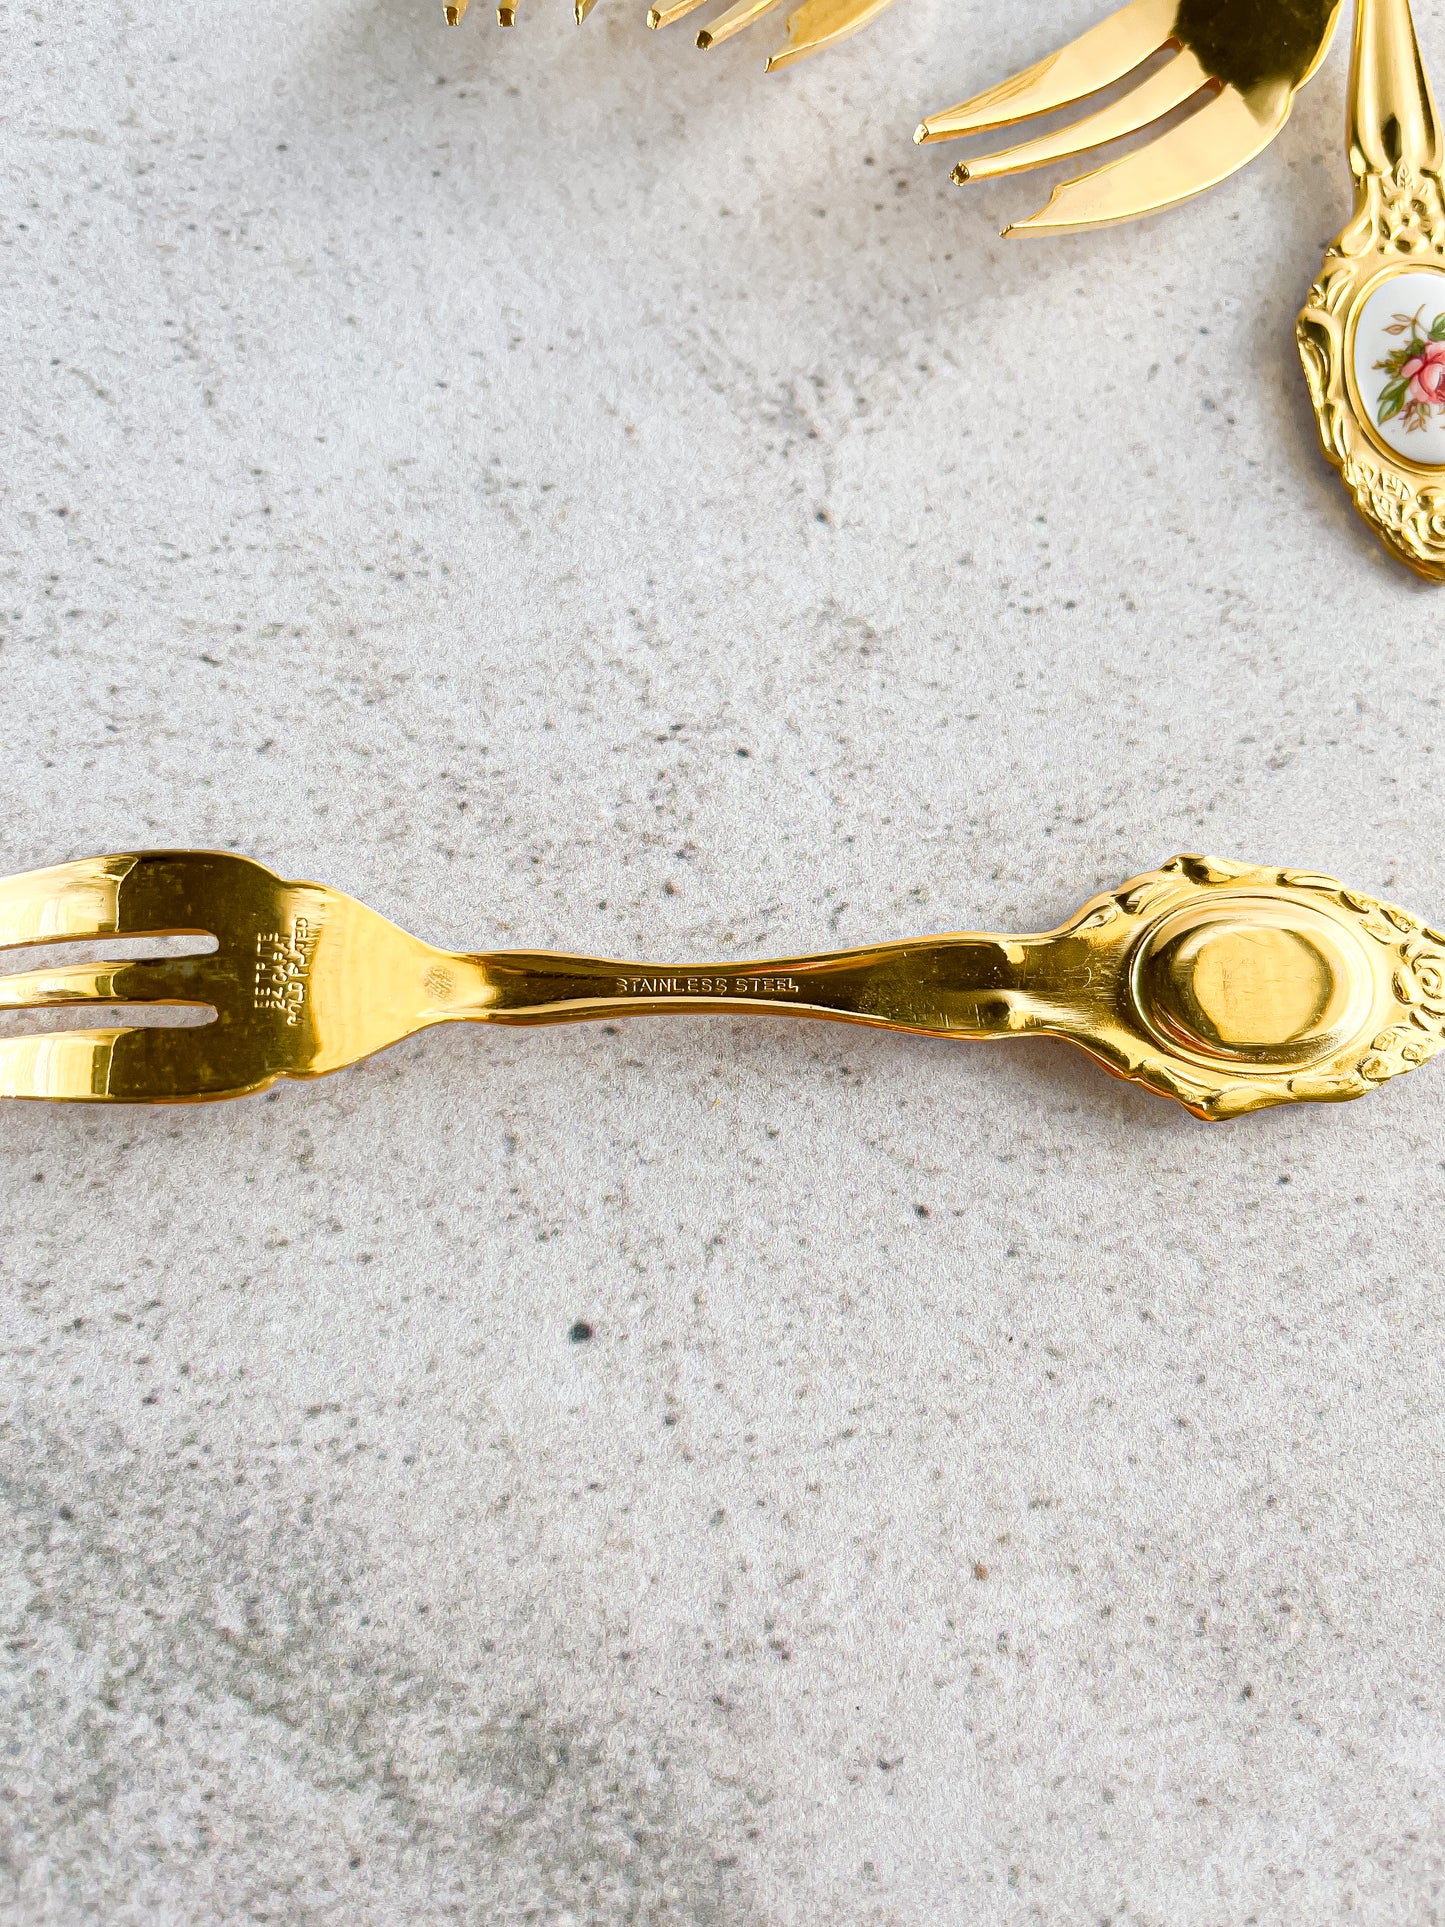 Eetrite 24k Gold-Plated Cake Forks with Pink Floral Medallion - Set of 6